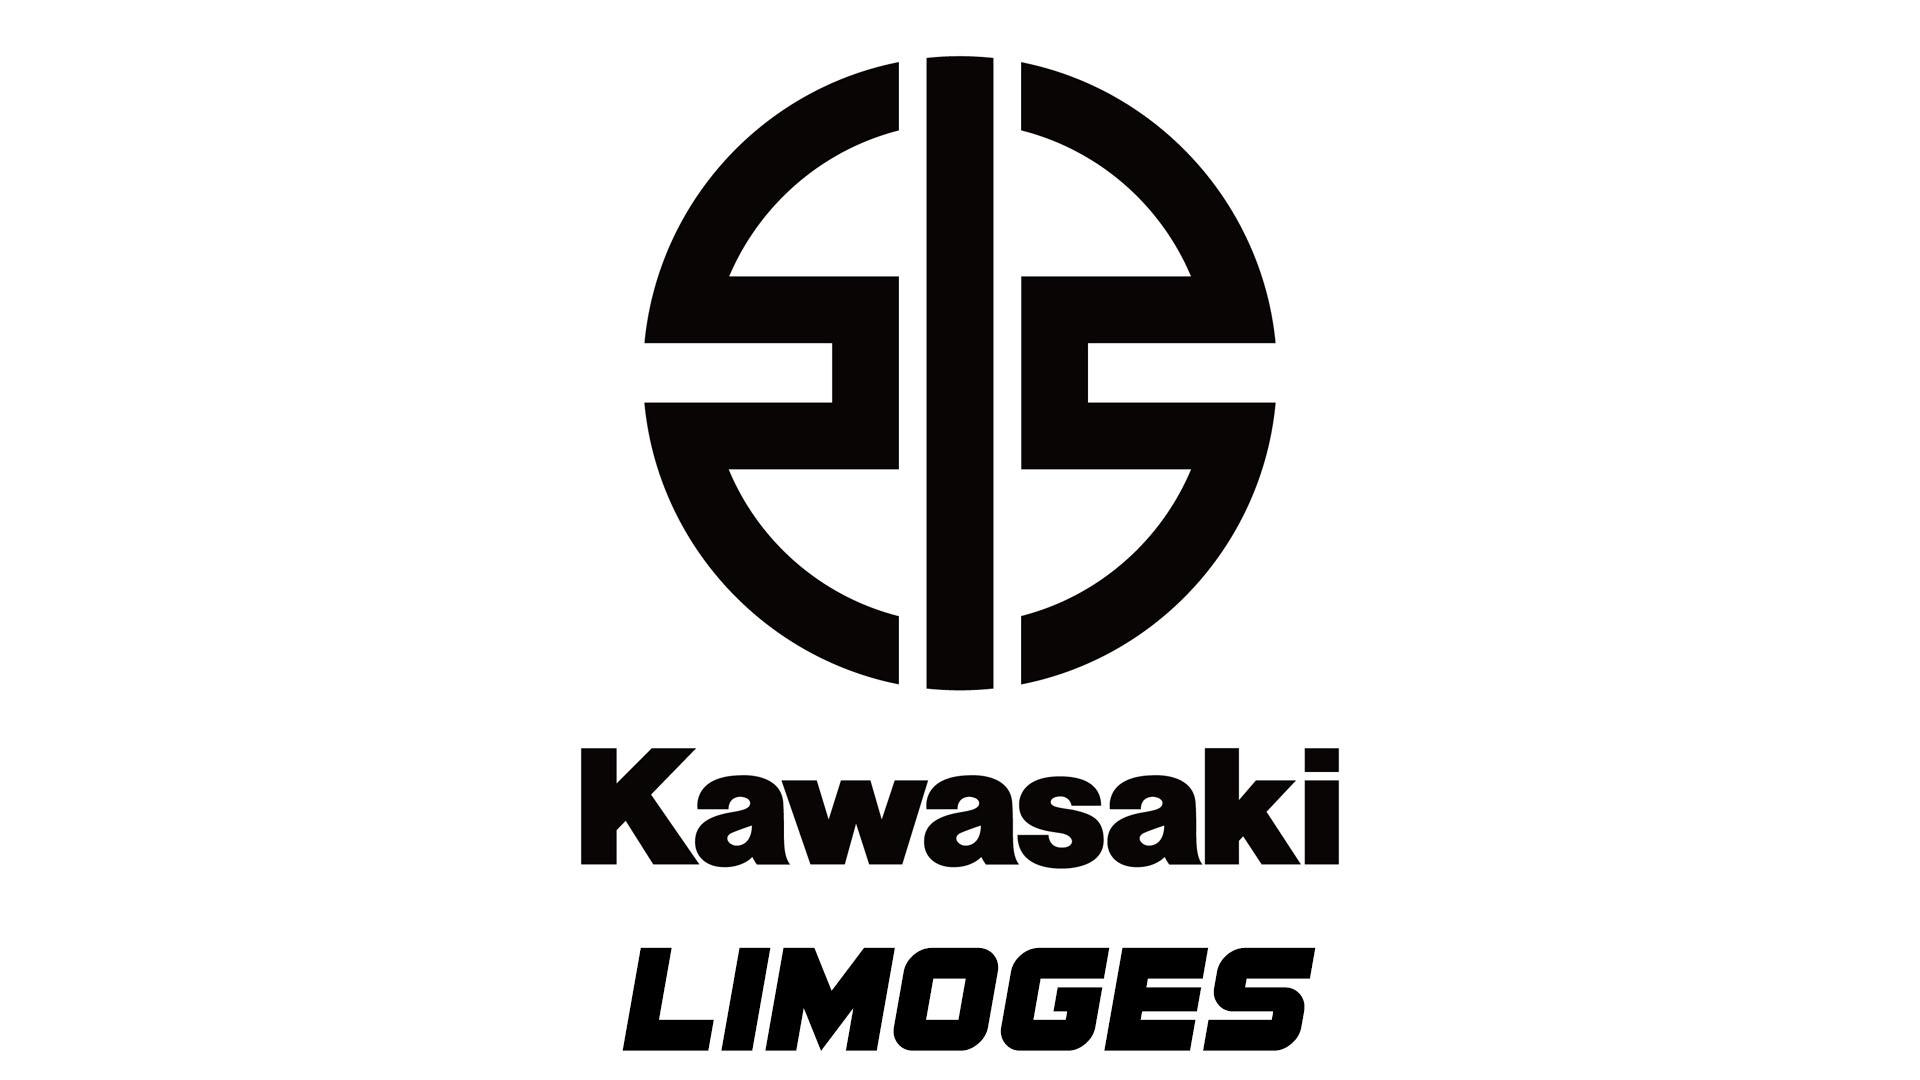 Kawasaki Limoges